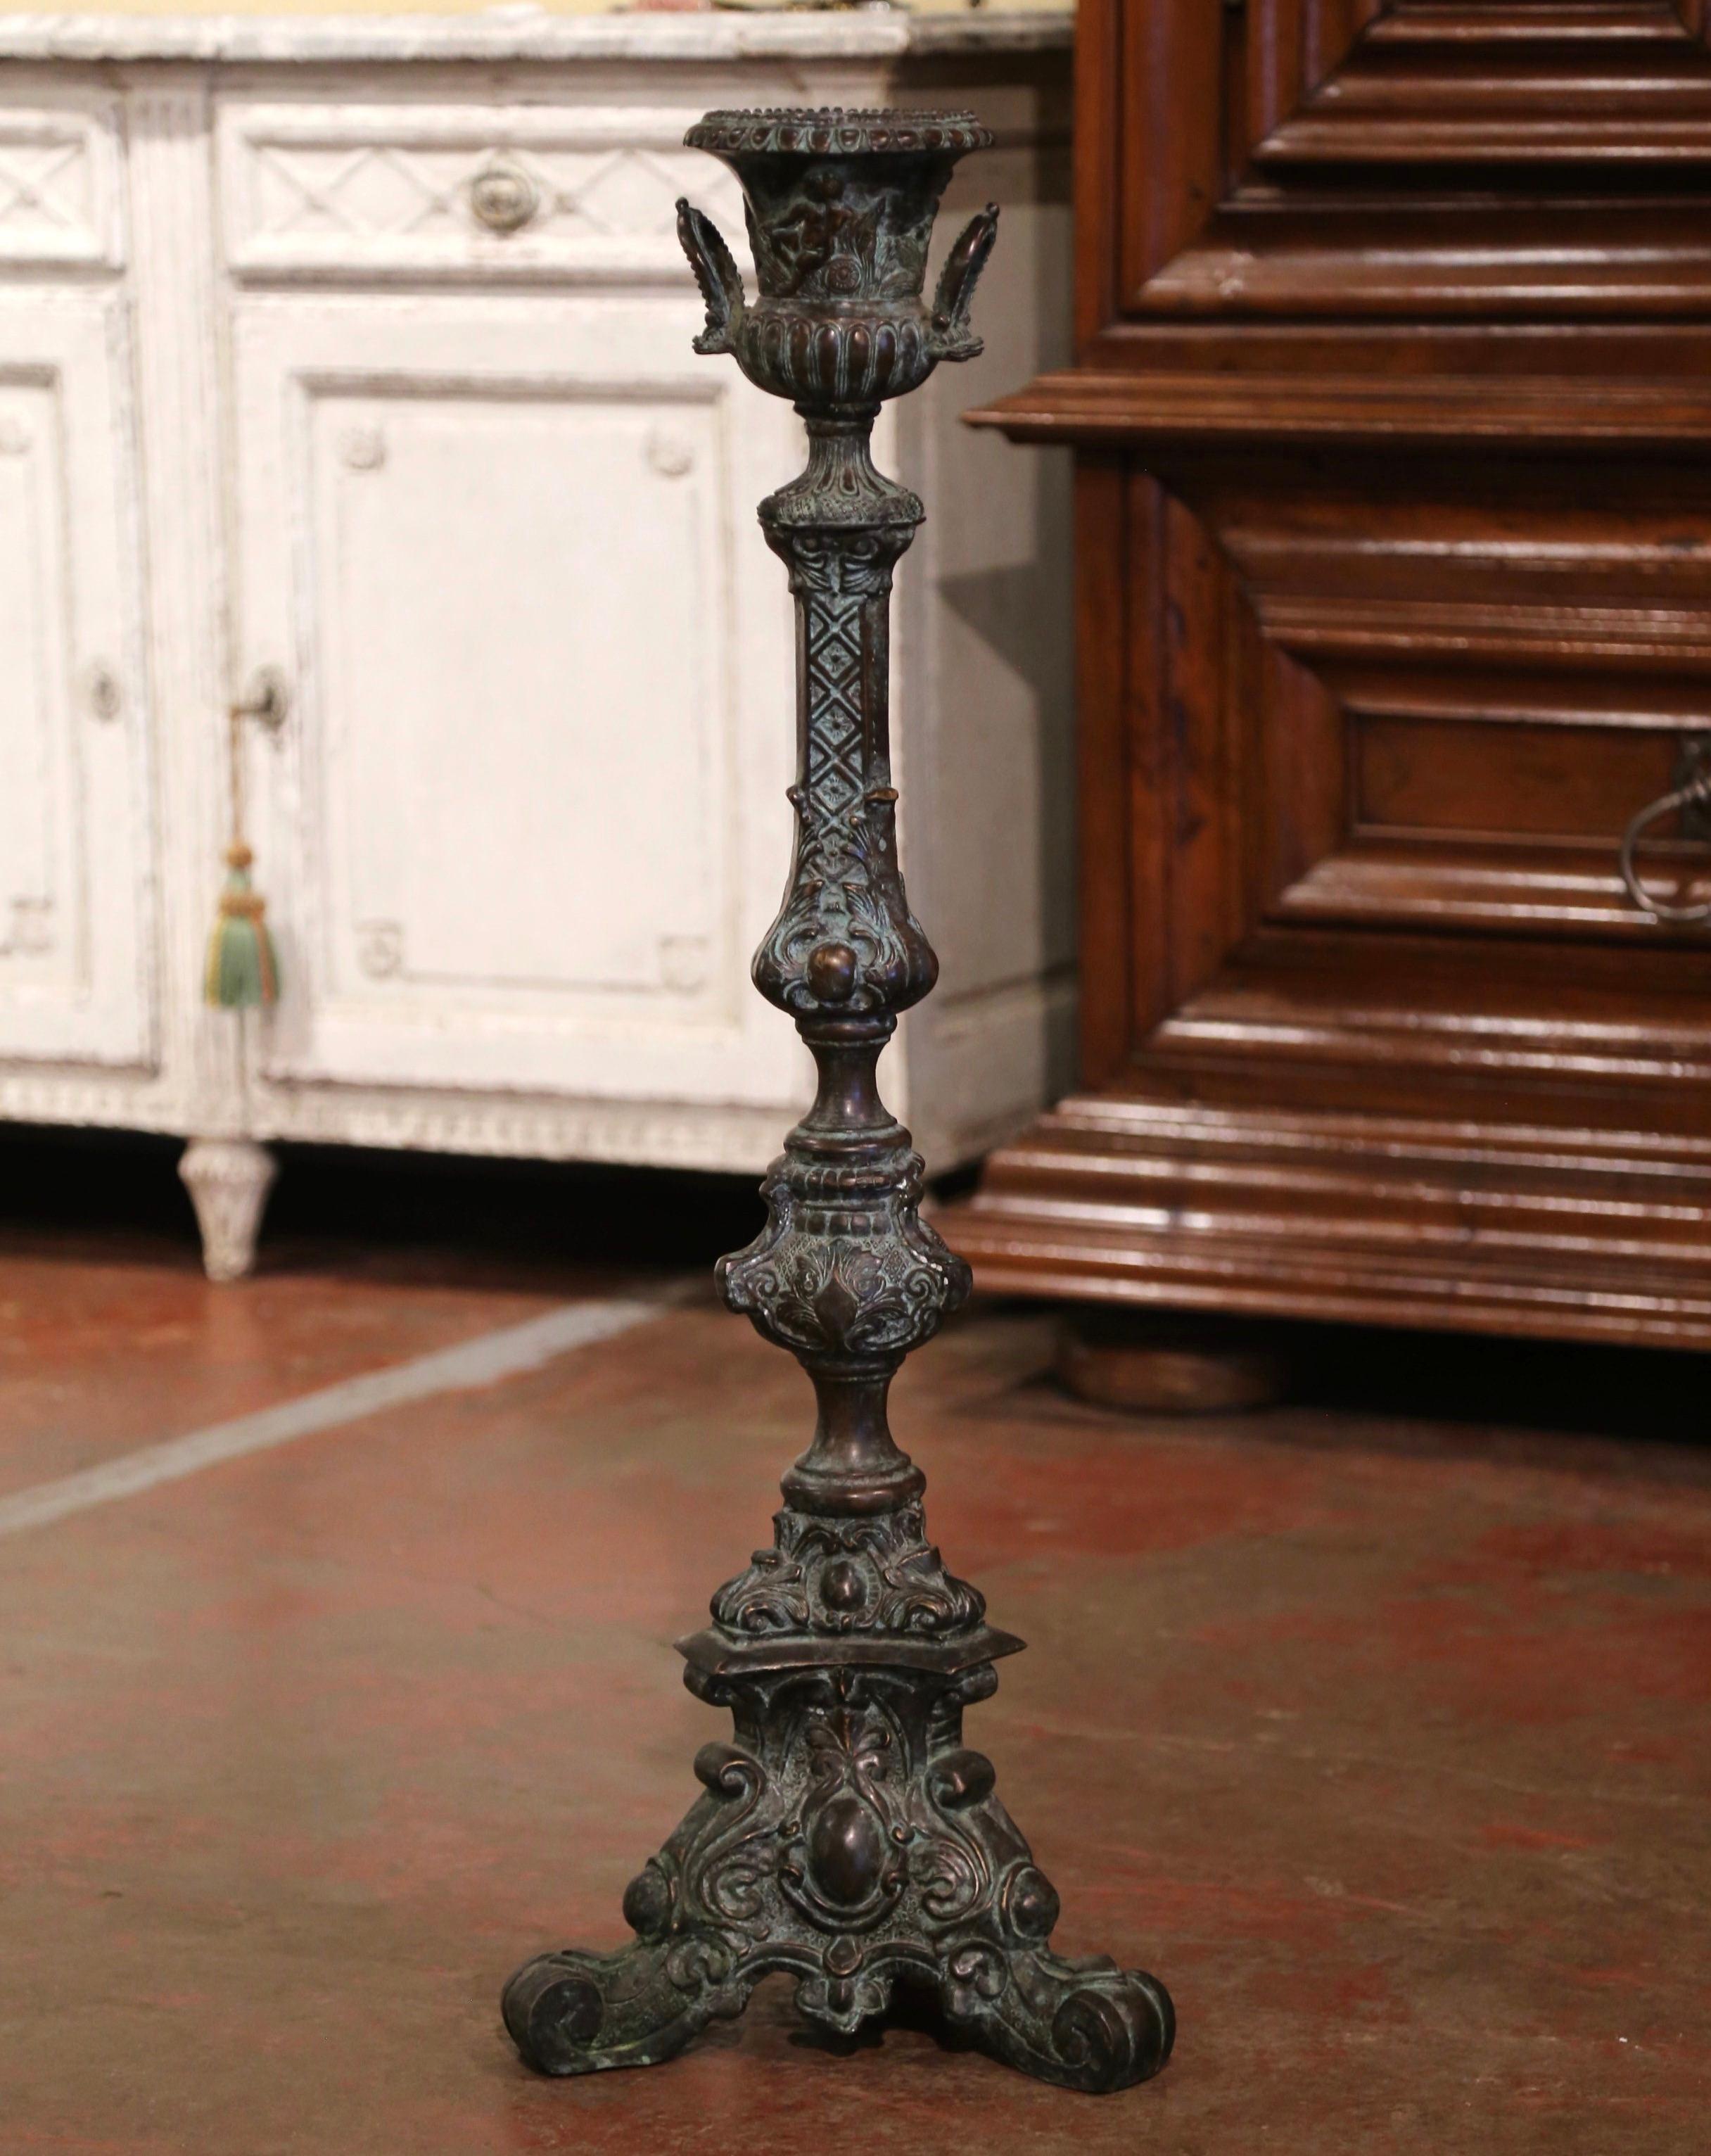 Der um 1950 in Frankreich gefertigte und aus massiver Bronze gefertigte Vintage-Kerzenhalter steht auf einem dreieckigen Sockel, der mit geschwungenen Füßen endet. Der Stiel ist mit aufwändigen Motiven verziert, darunter Fleur-de-Lis- und